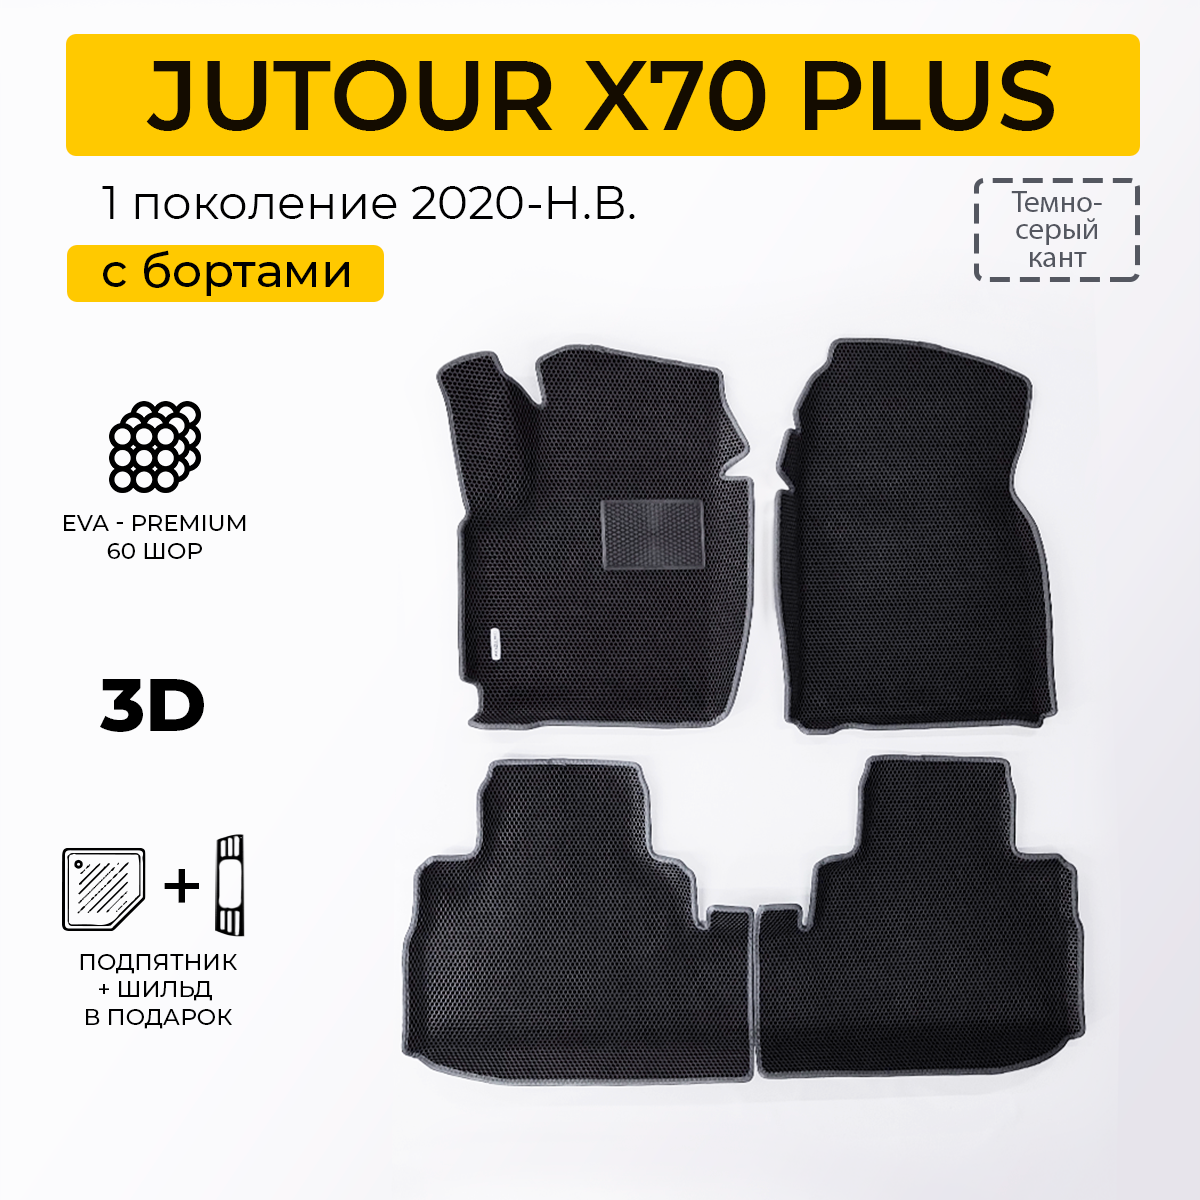 EVA коврики для автомобиля JETOUR X70 PLUS (Джетур Х70 Плюс) 2020-Н. В. с бортами, коврики эва в салон